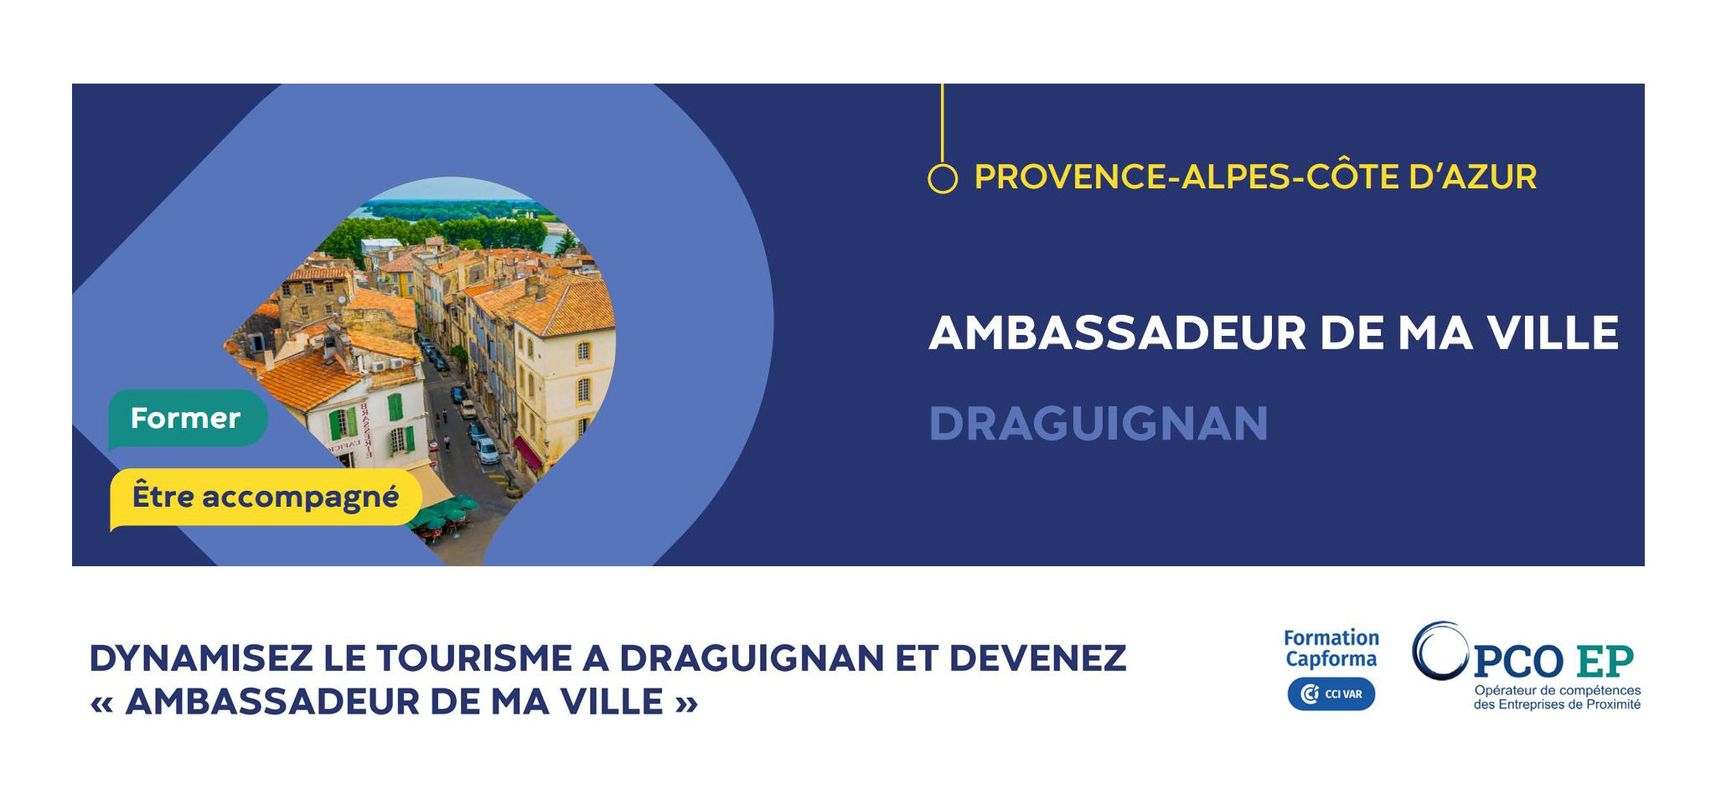 Dynamisez le tourisme à Draguignan : devenez "ambassadeur de ma ville".